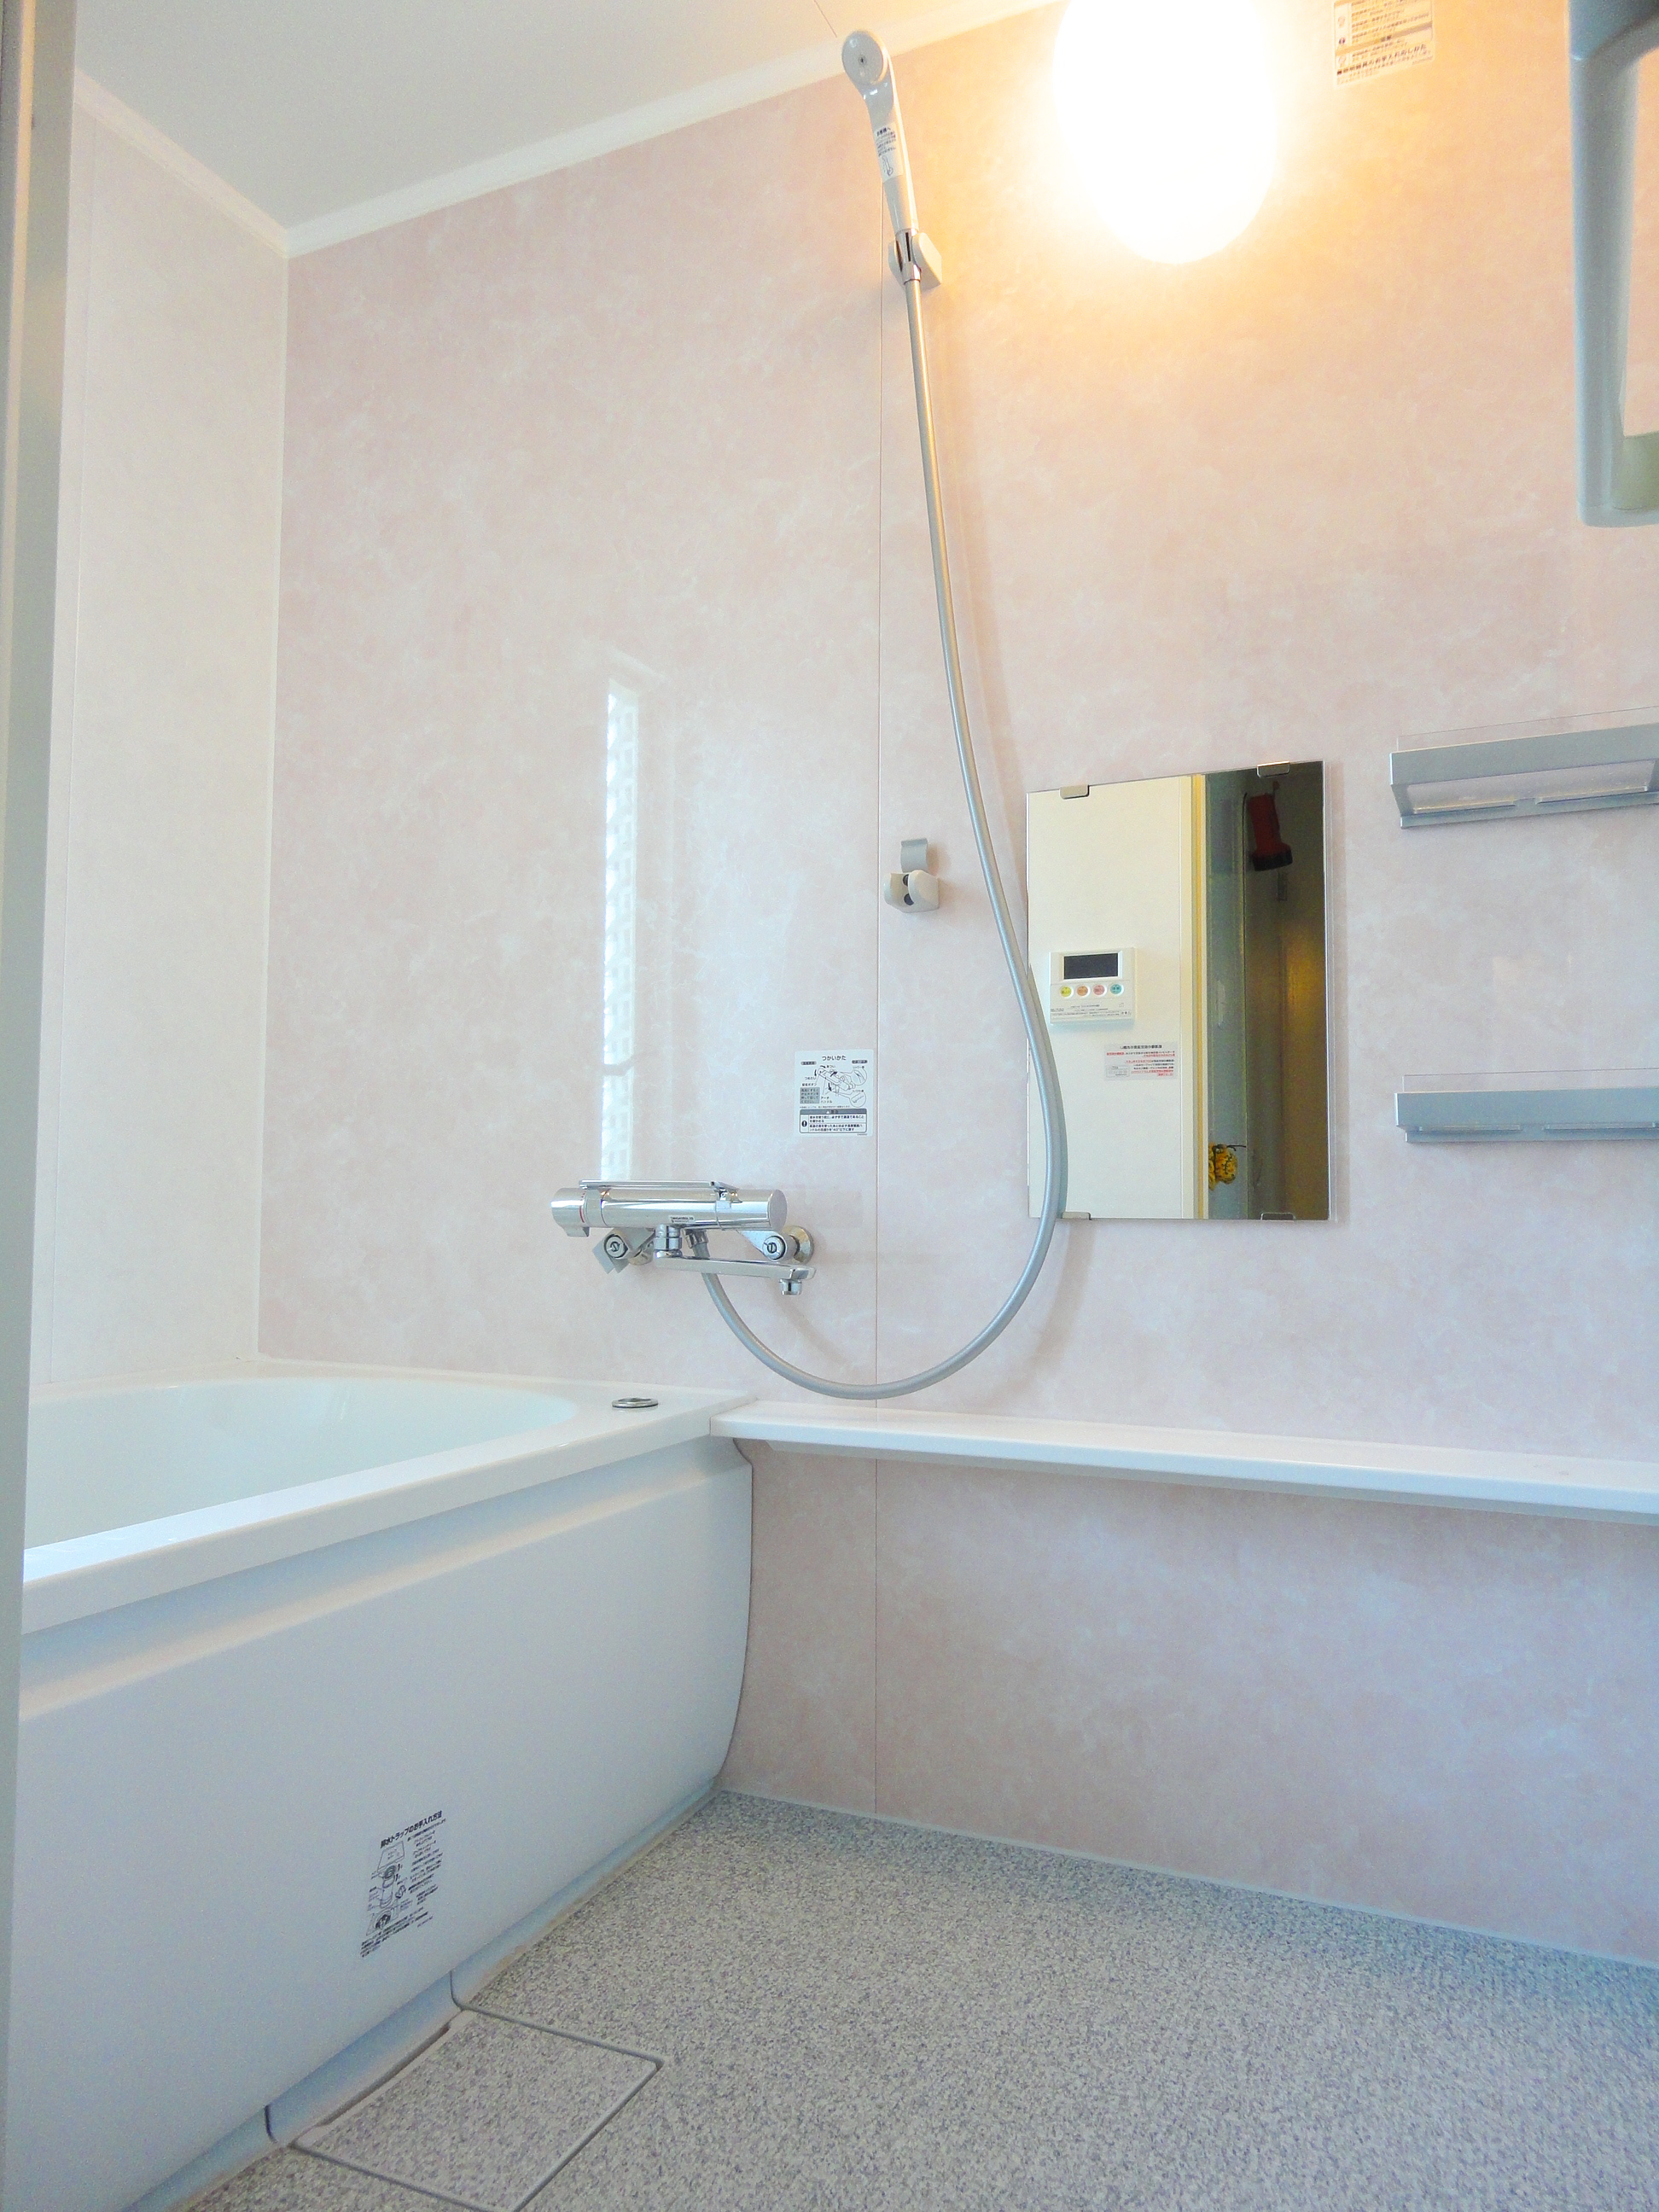 ピンクの壁紙のお風呂 お風呂 ユニットバスのリフォーム事例 八千代市 リフォームo Uccino